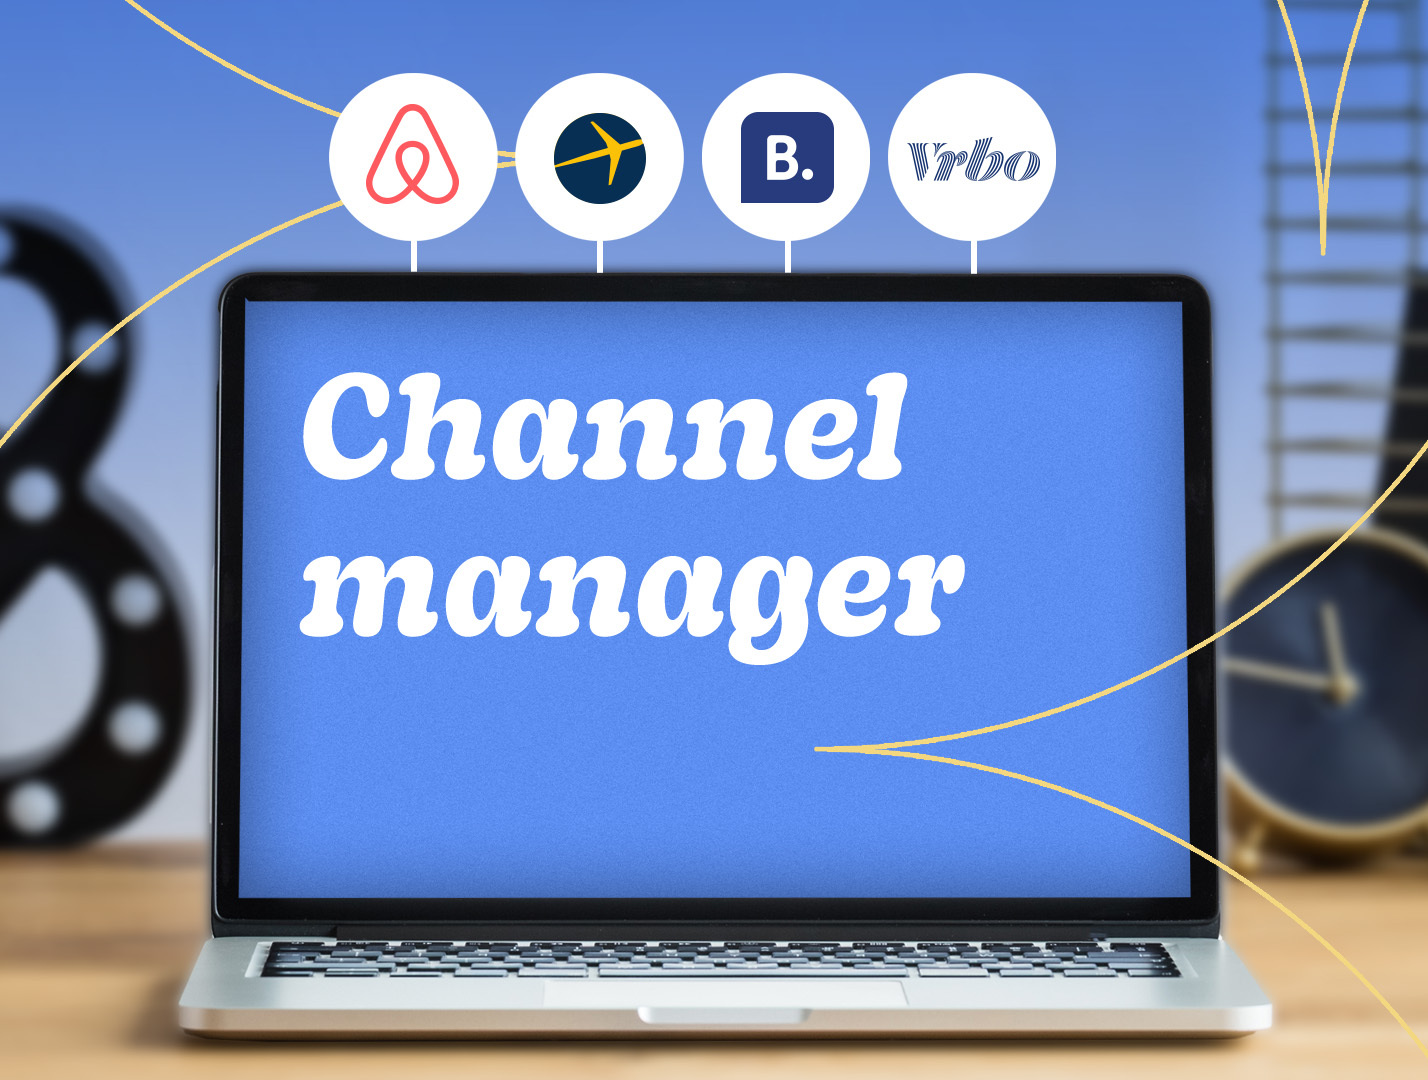 mejor_Channel_manager